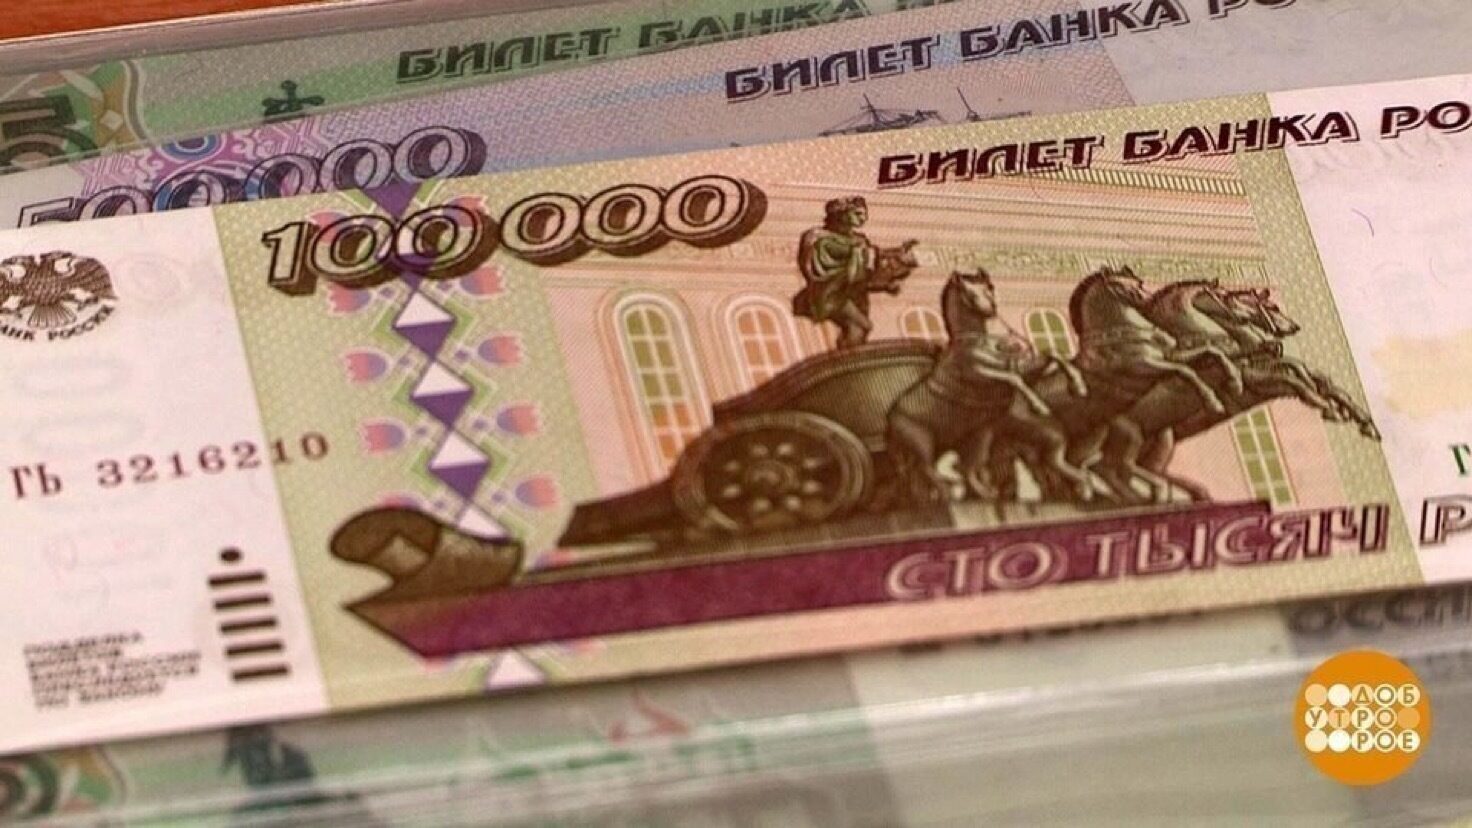 100 000 Рублей одной купюрой